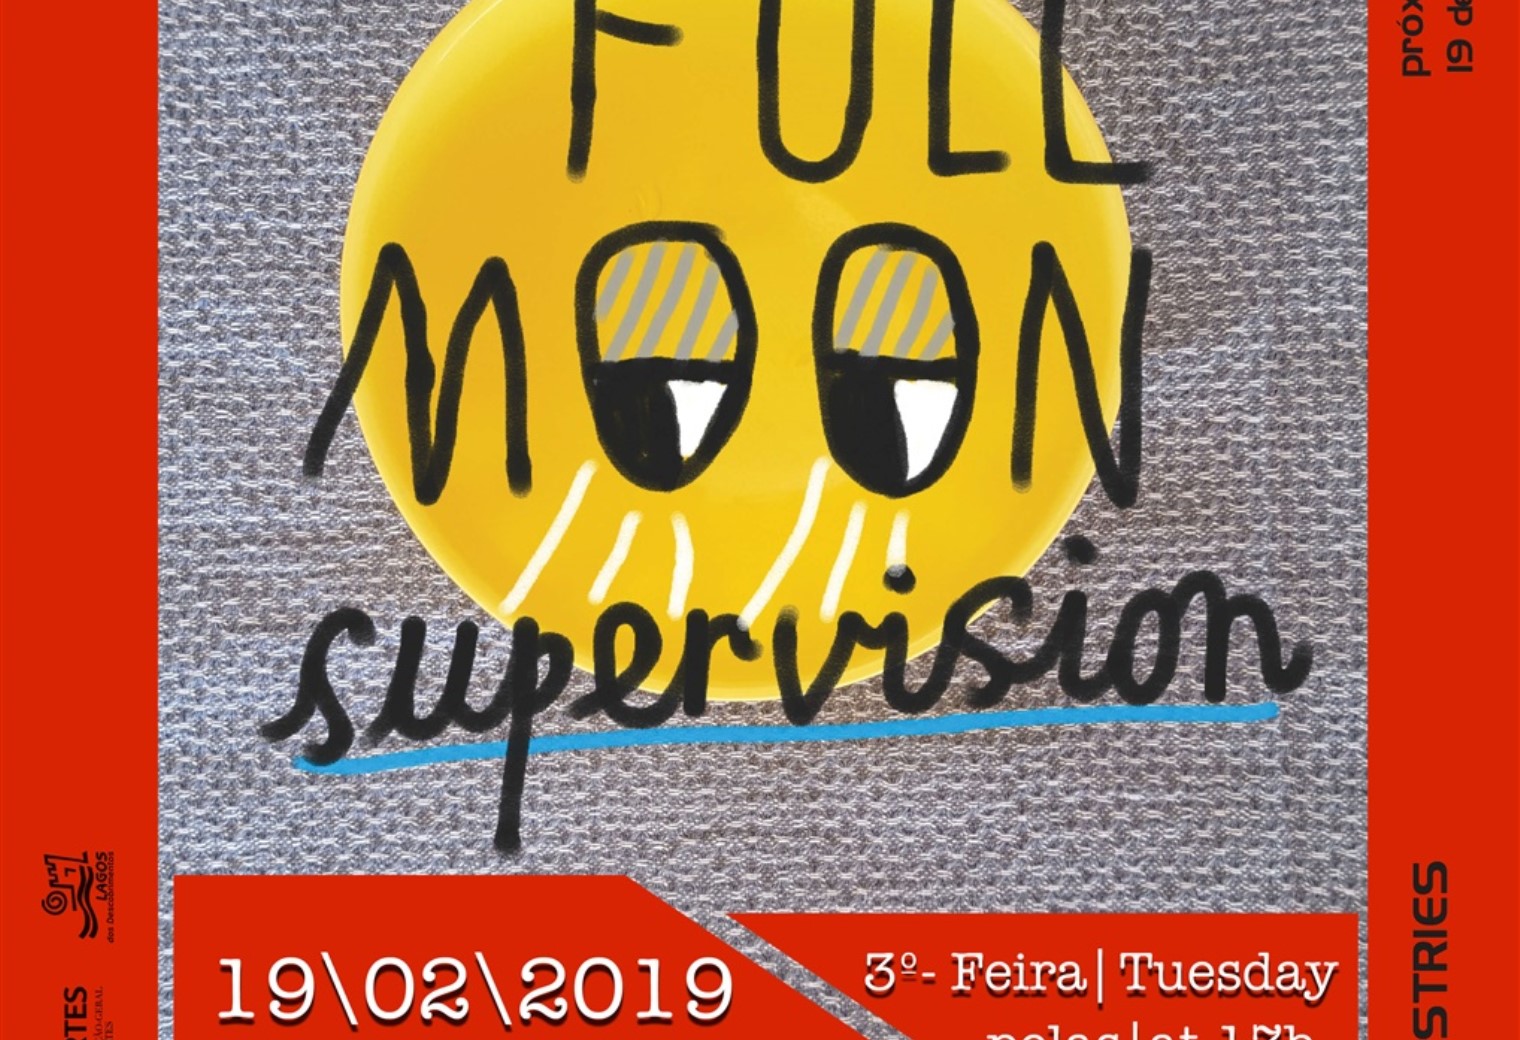 Sessão de Desenho "Full Moon Supervision"